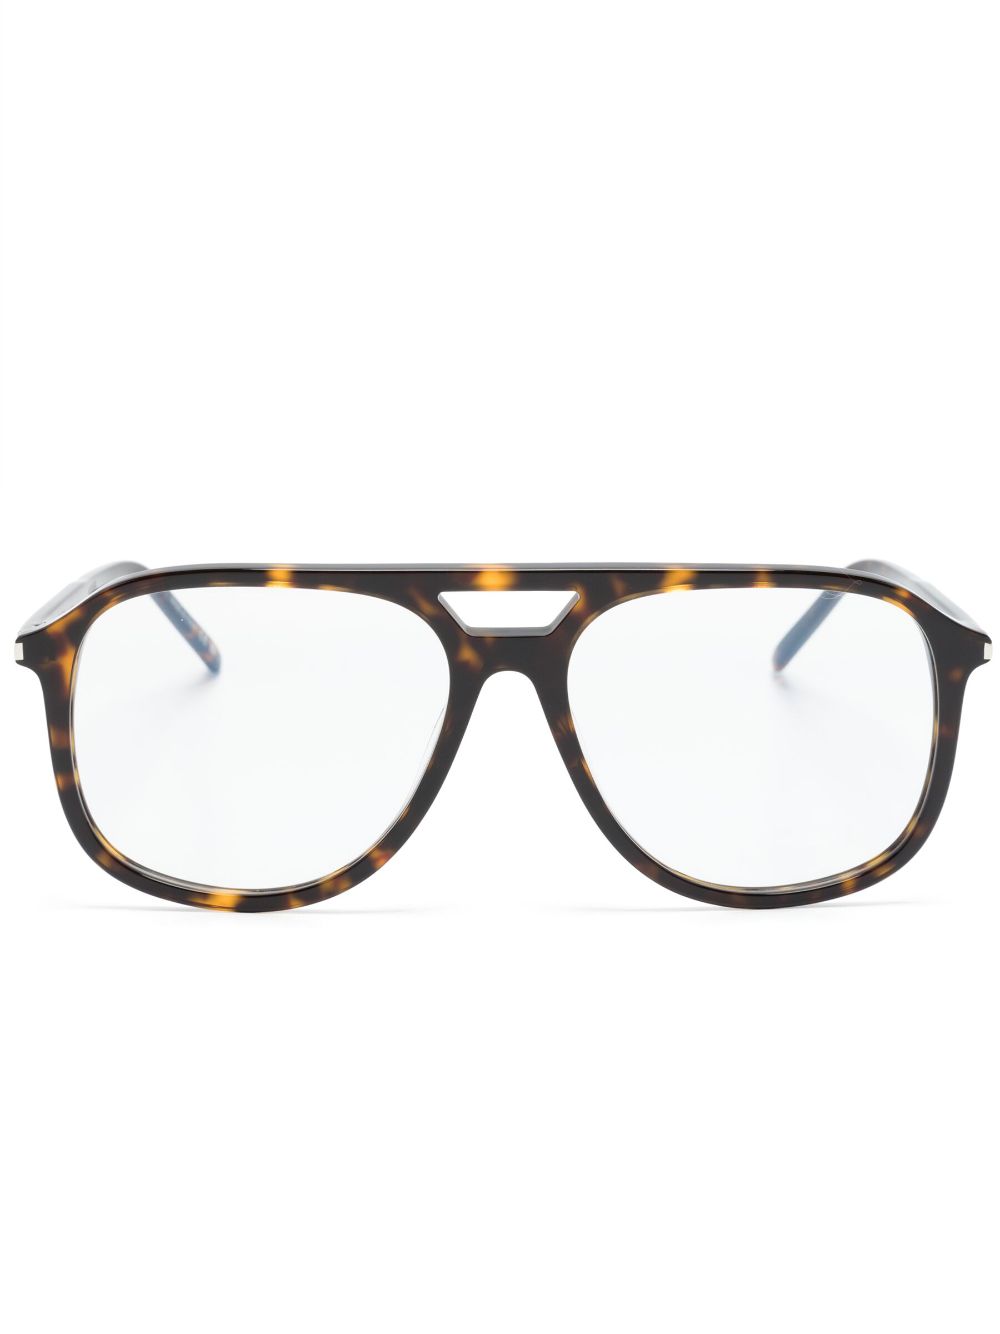 Saint Laurent Tortoiseshell Pilot-frame Glasses In Brown